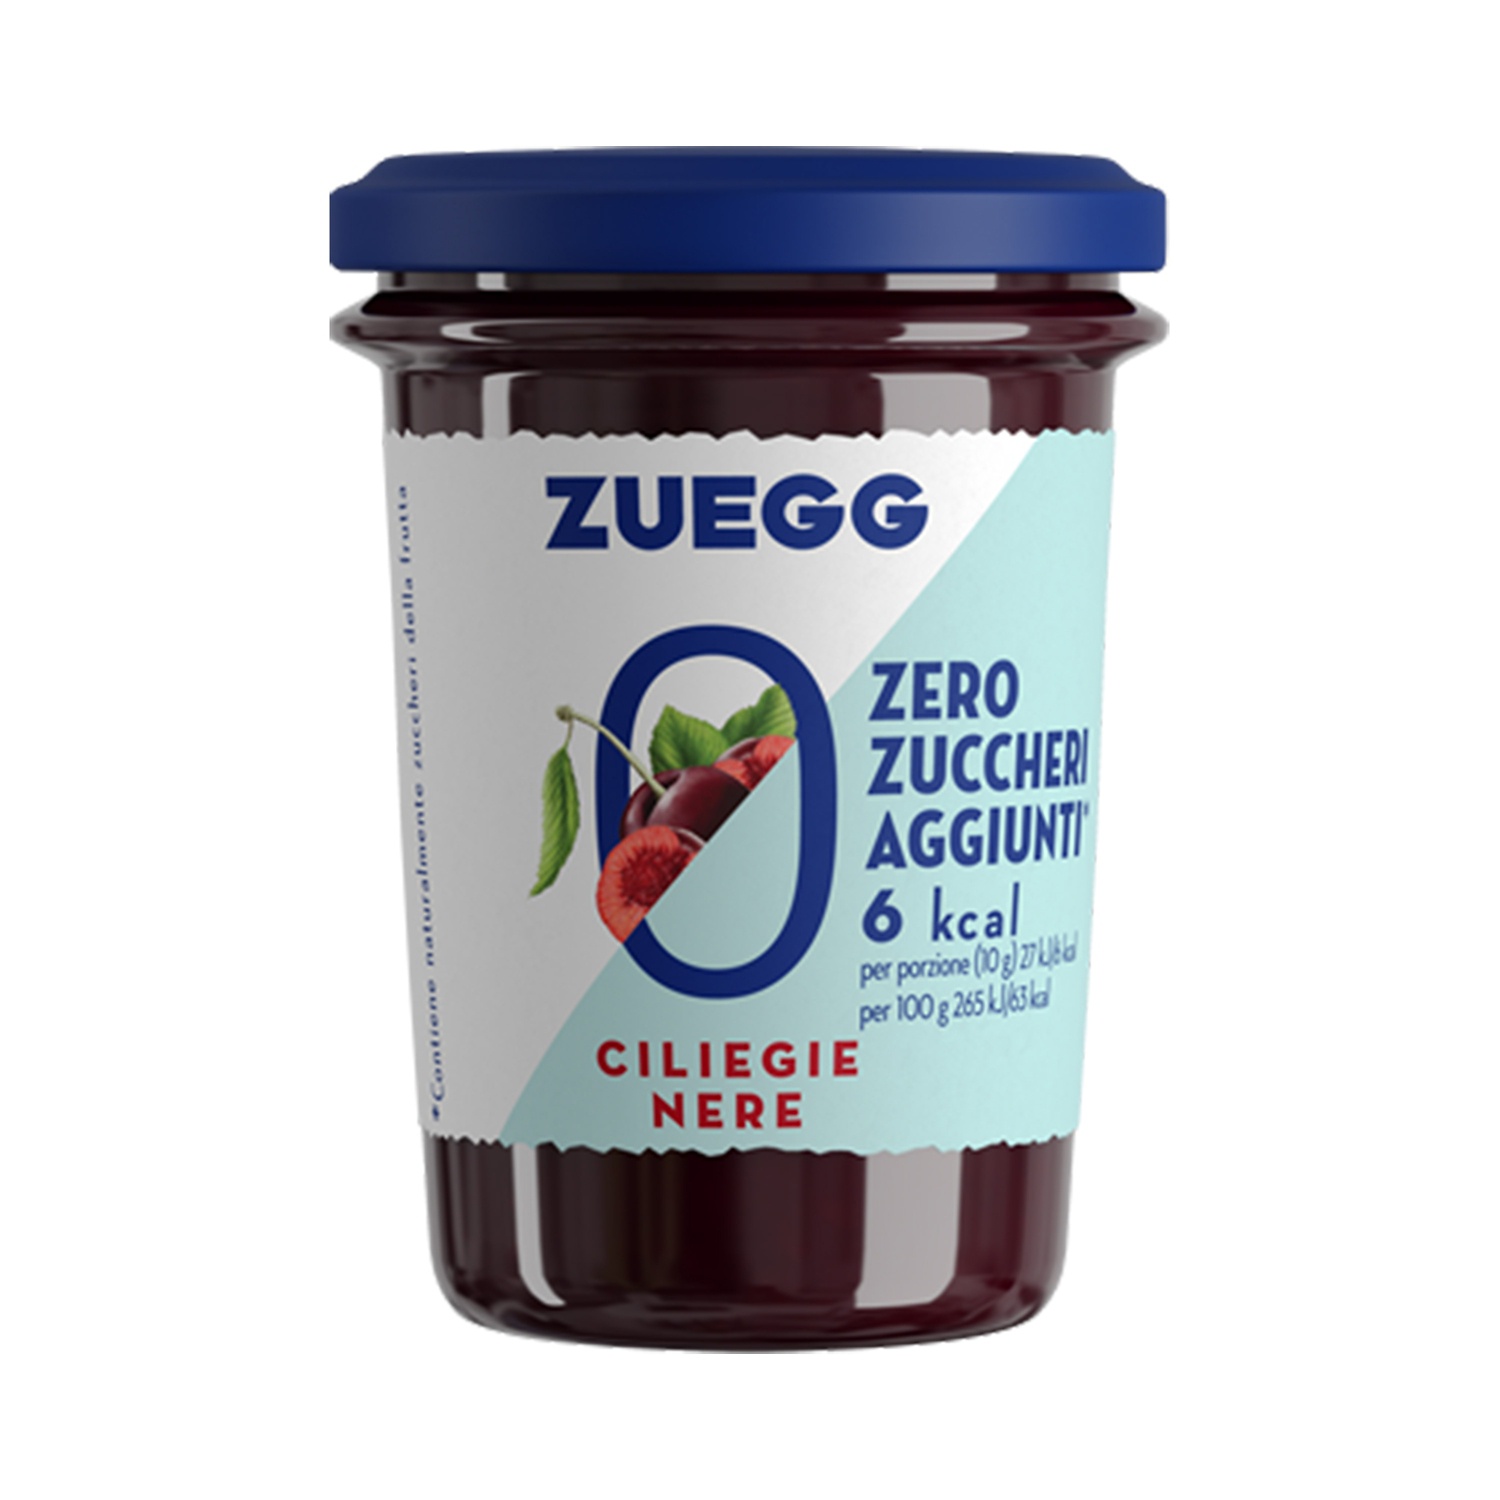 ZUEGG Confettura alle ciliegie nere Zero Zuccheri aggiunti